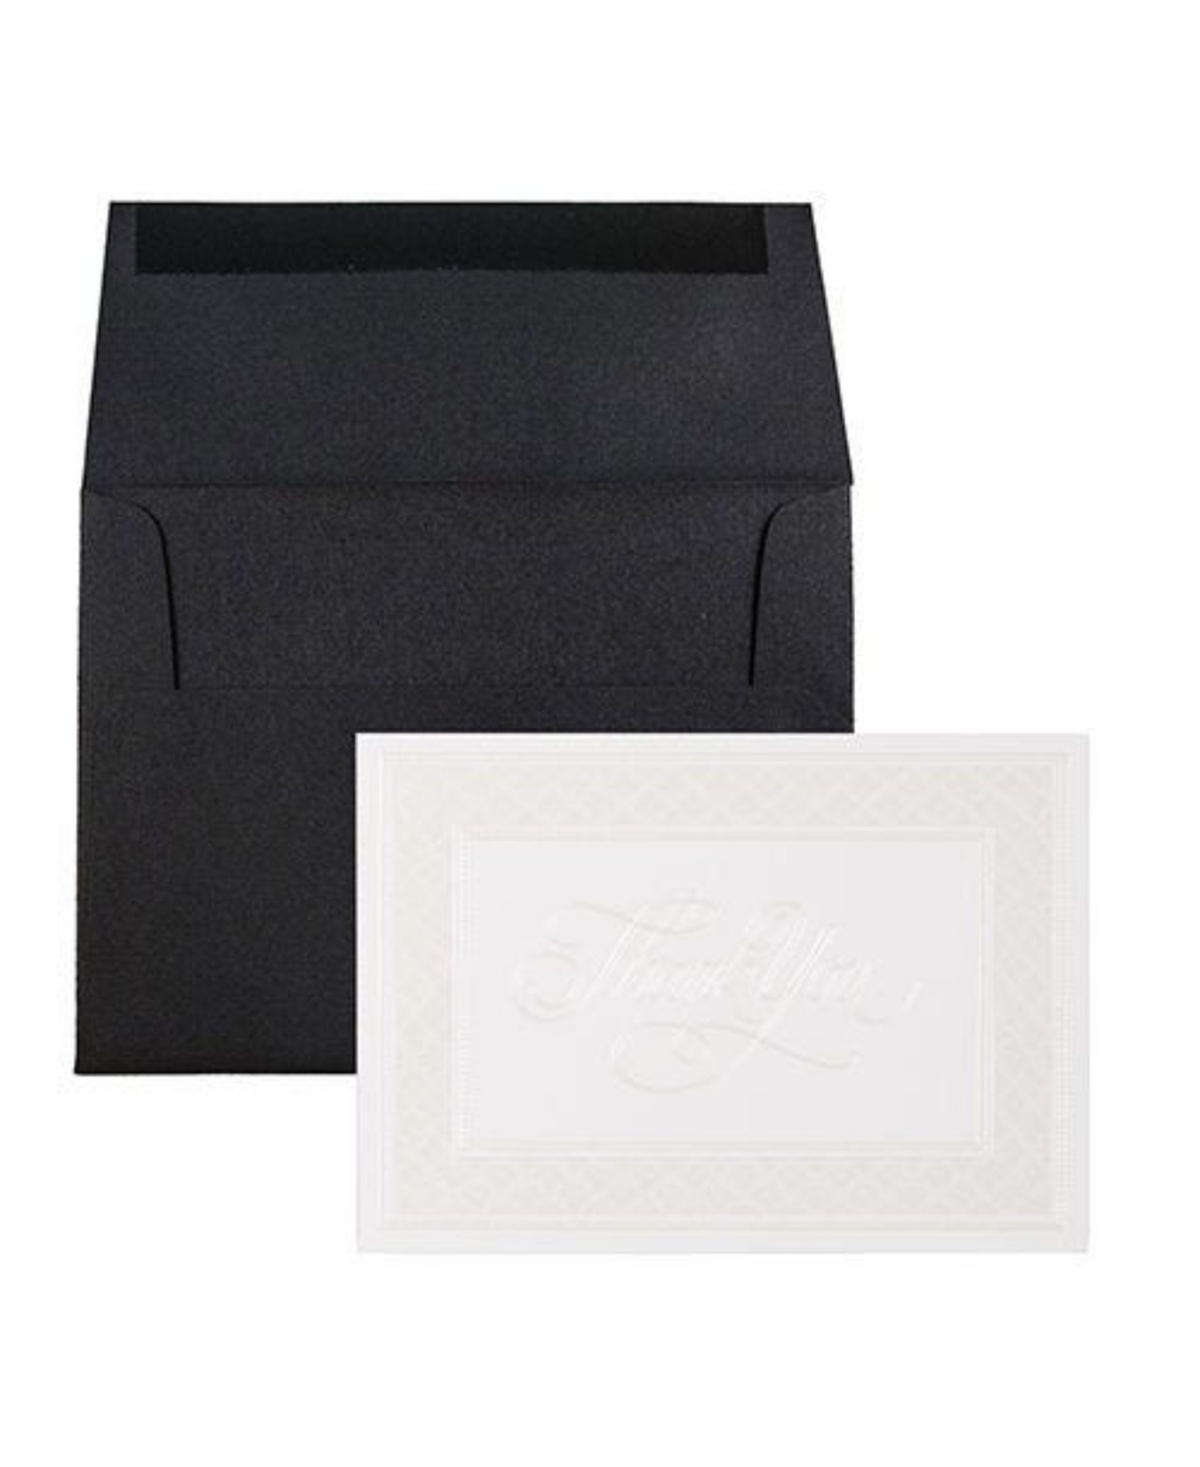 Jam Paper Thank You Card Sets - 25 Cards and Envelopes - Border Cards Black Linen Envelopes